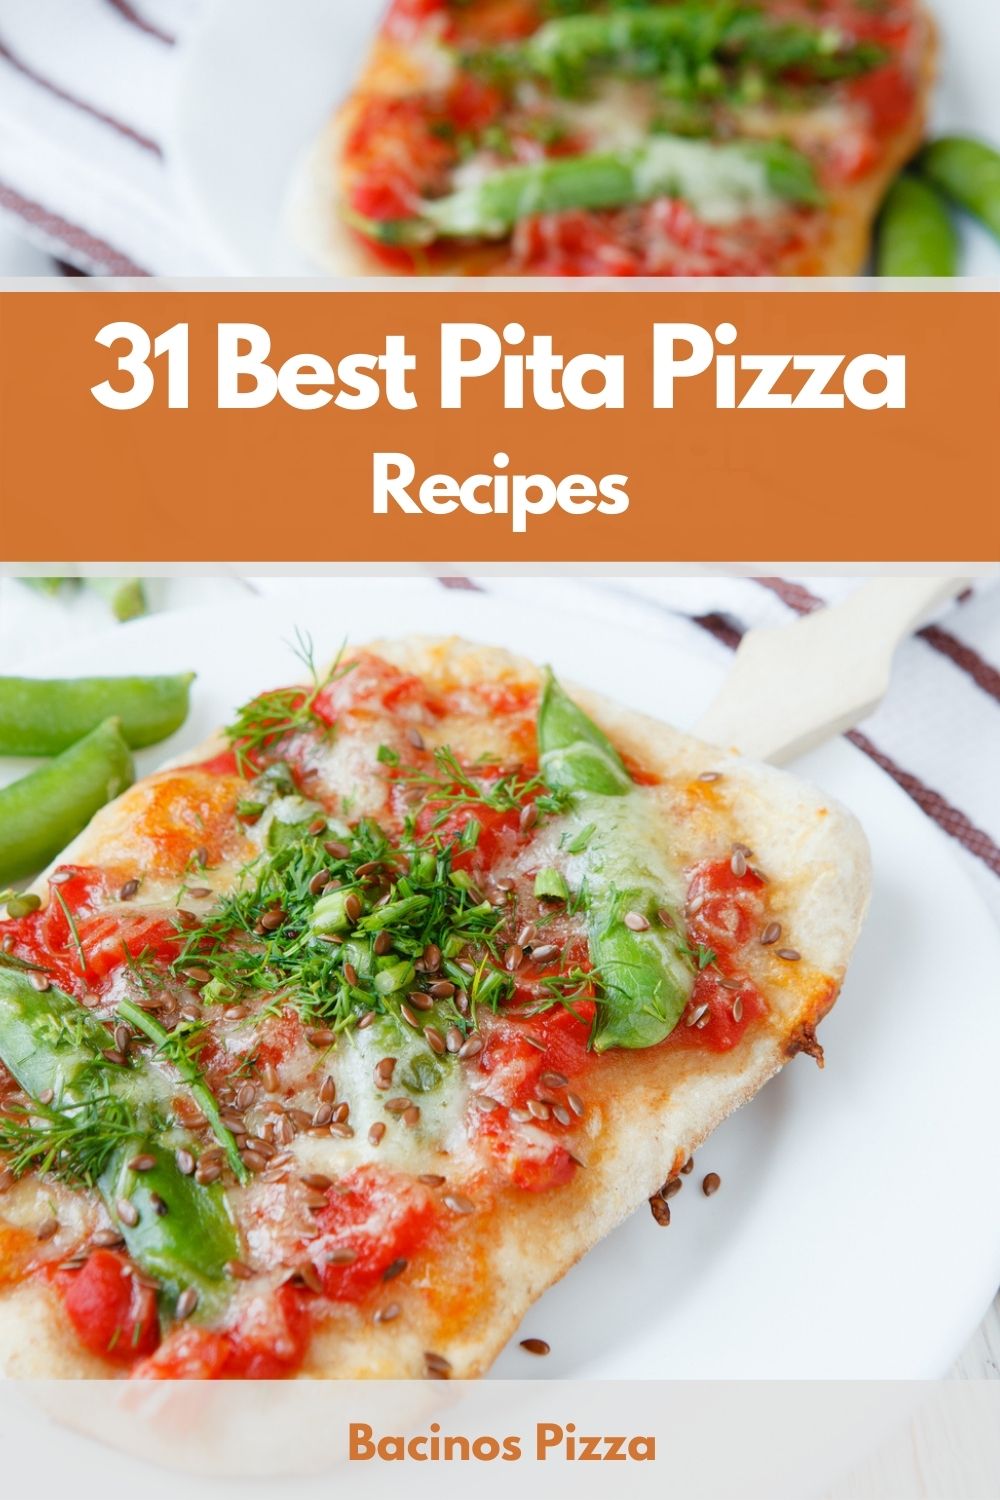 31 Best Pita Pizza Recipes pin